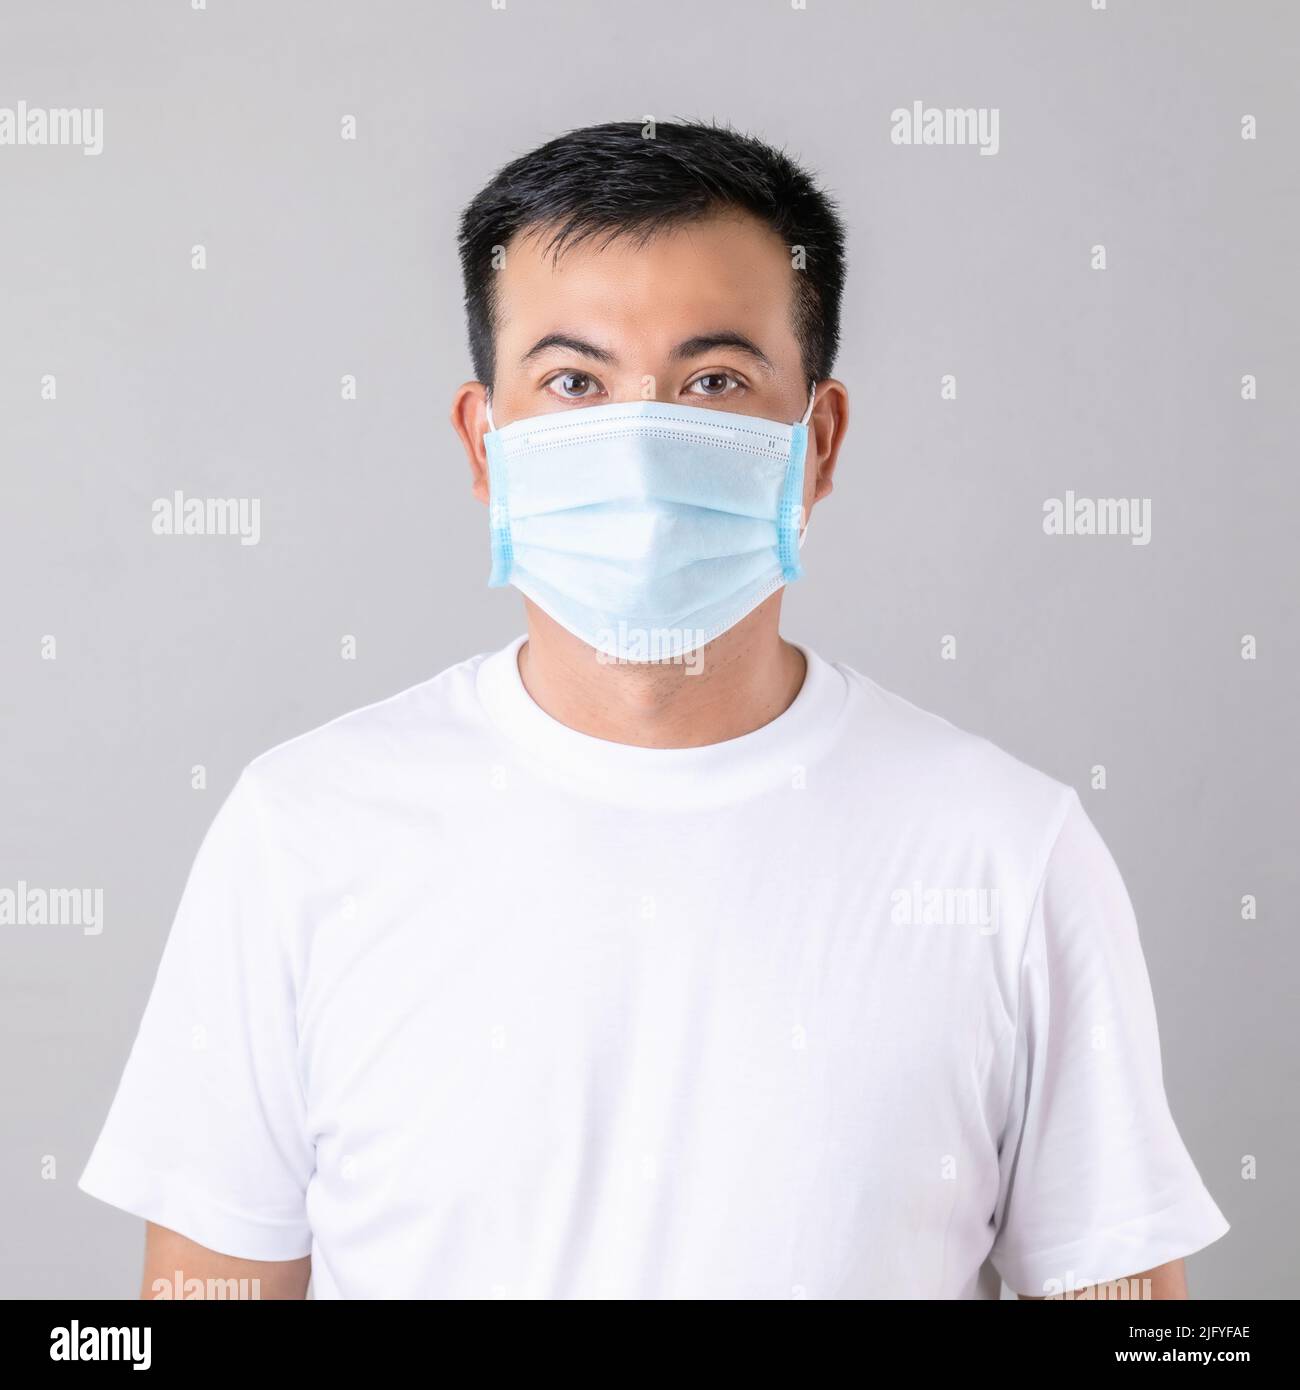 Porträt eines thailändischen Mannes trägt eine schützende Gesichtsmaske, um zu verhindern, dass Virus Studio auf grauem Hintergrund geschossen Stockfoto